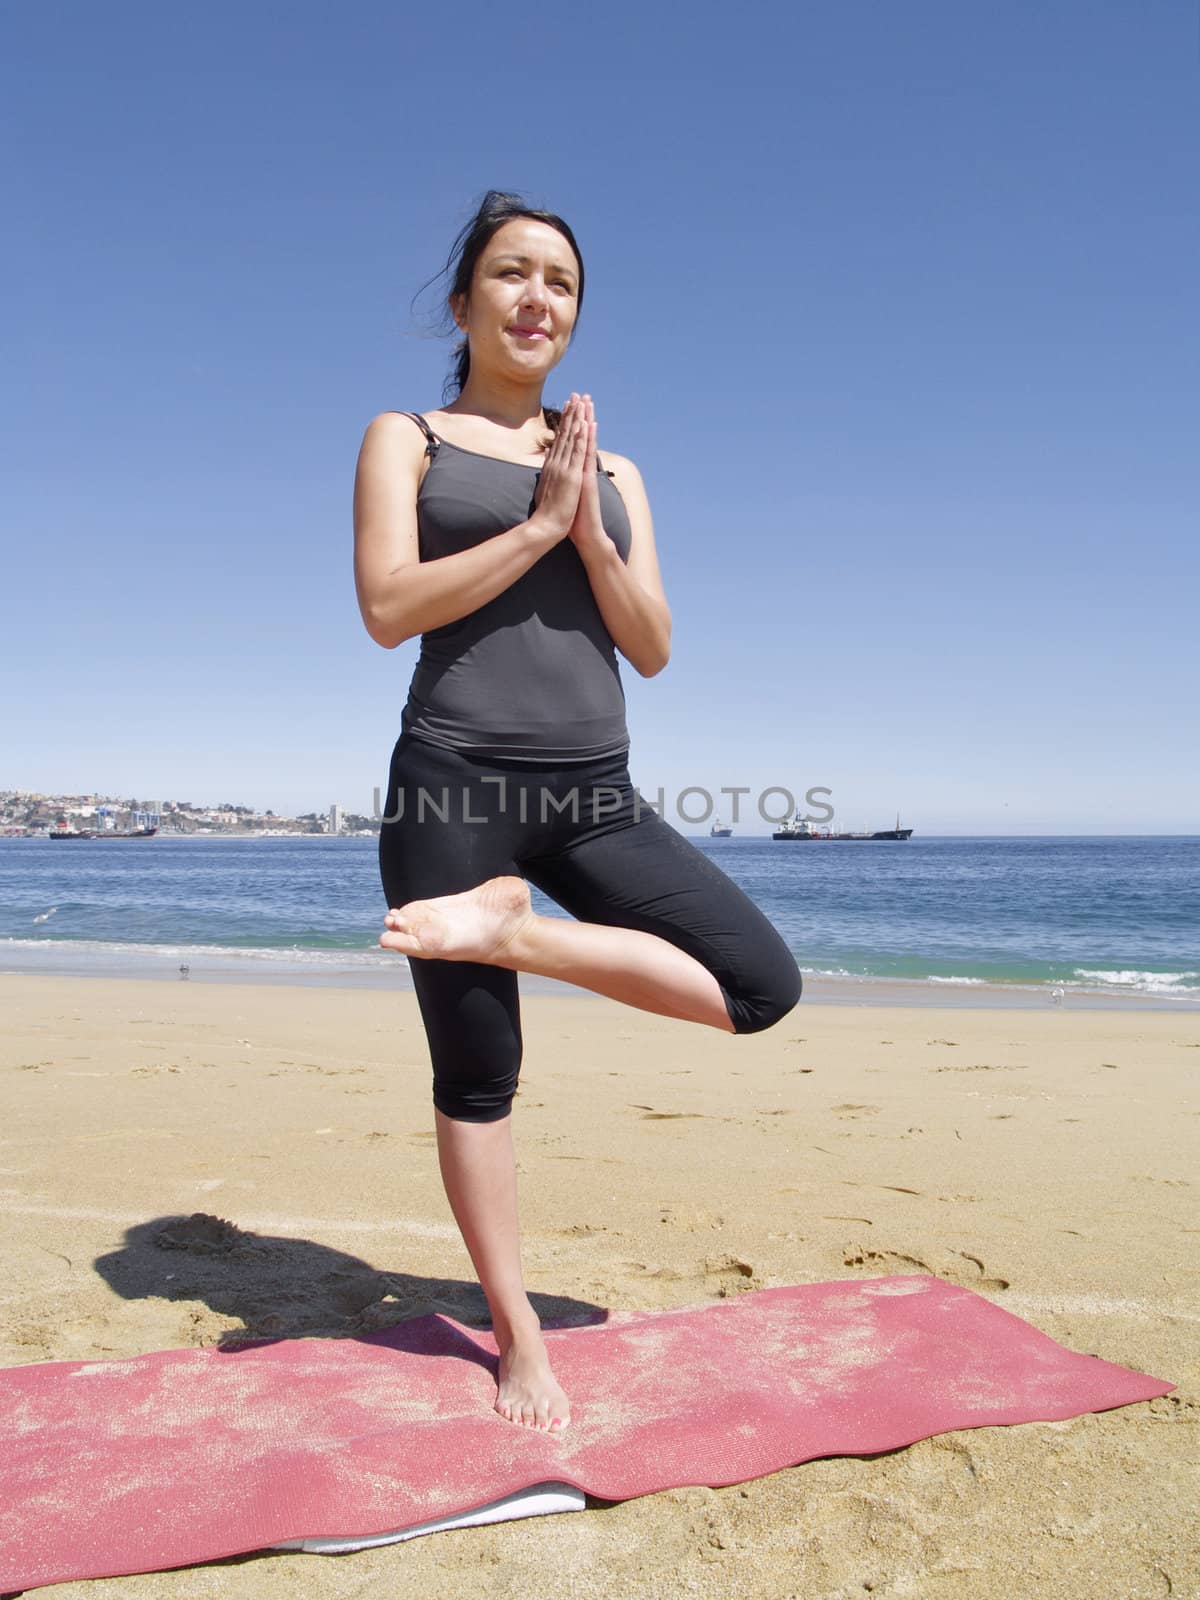 Yoga teacher practising at the beach pose tadasana